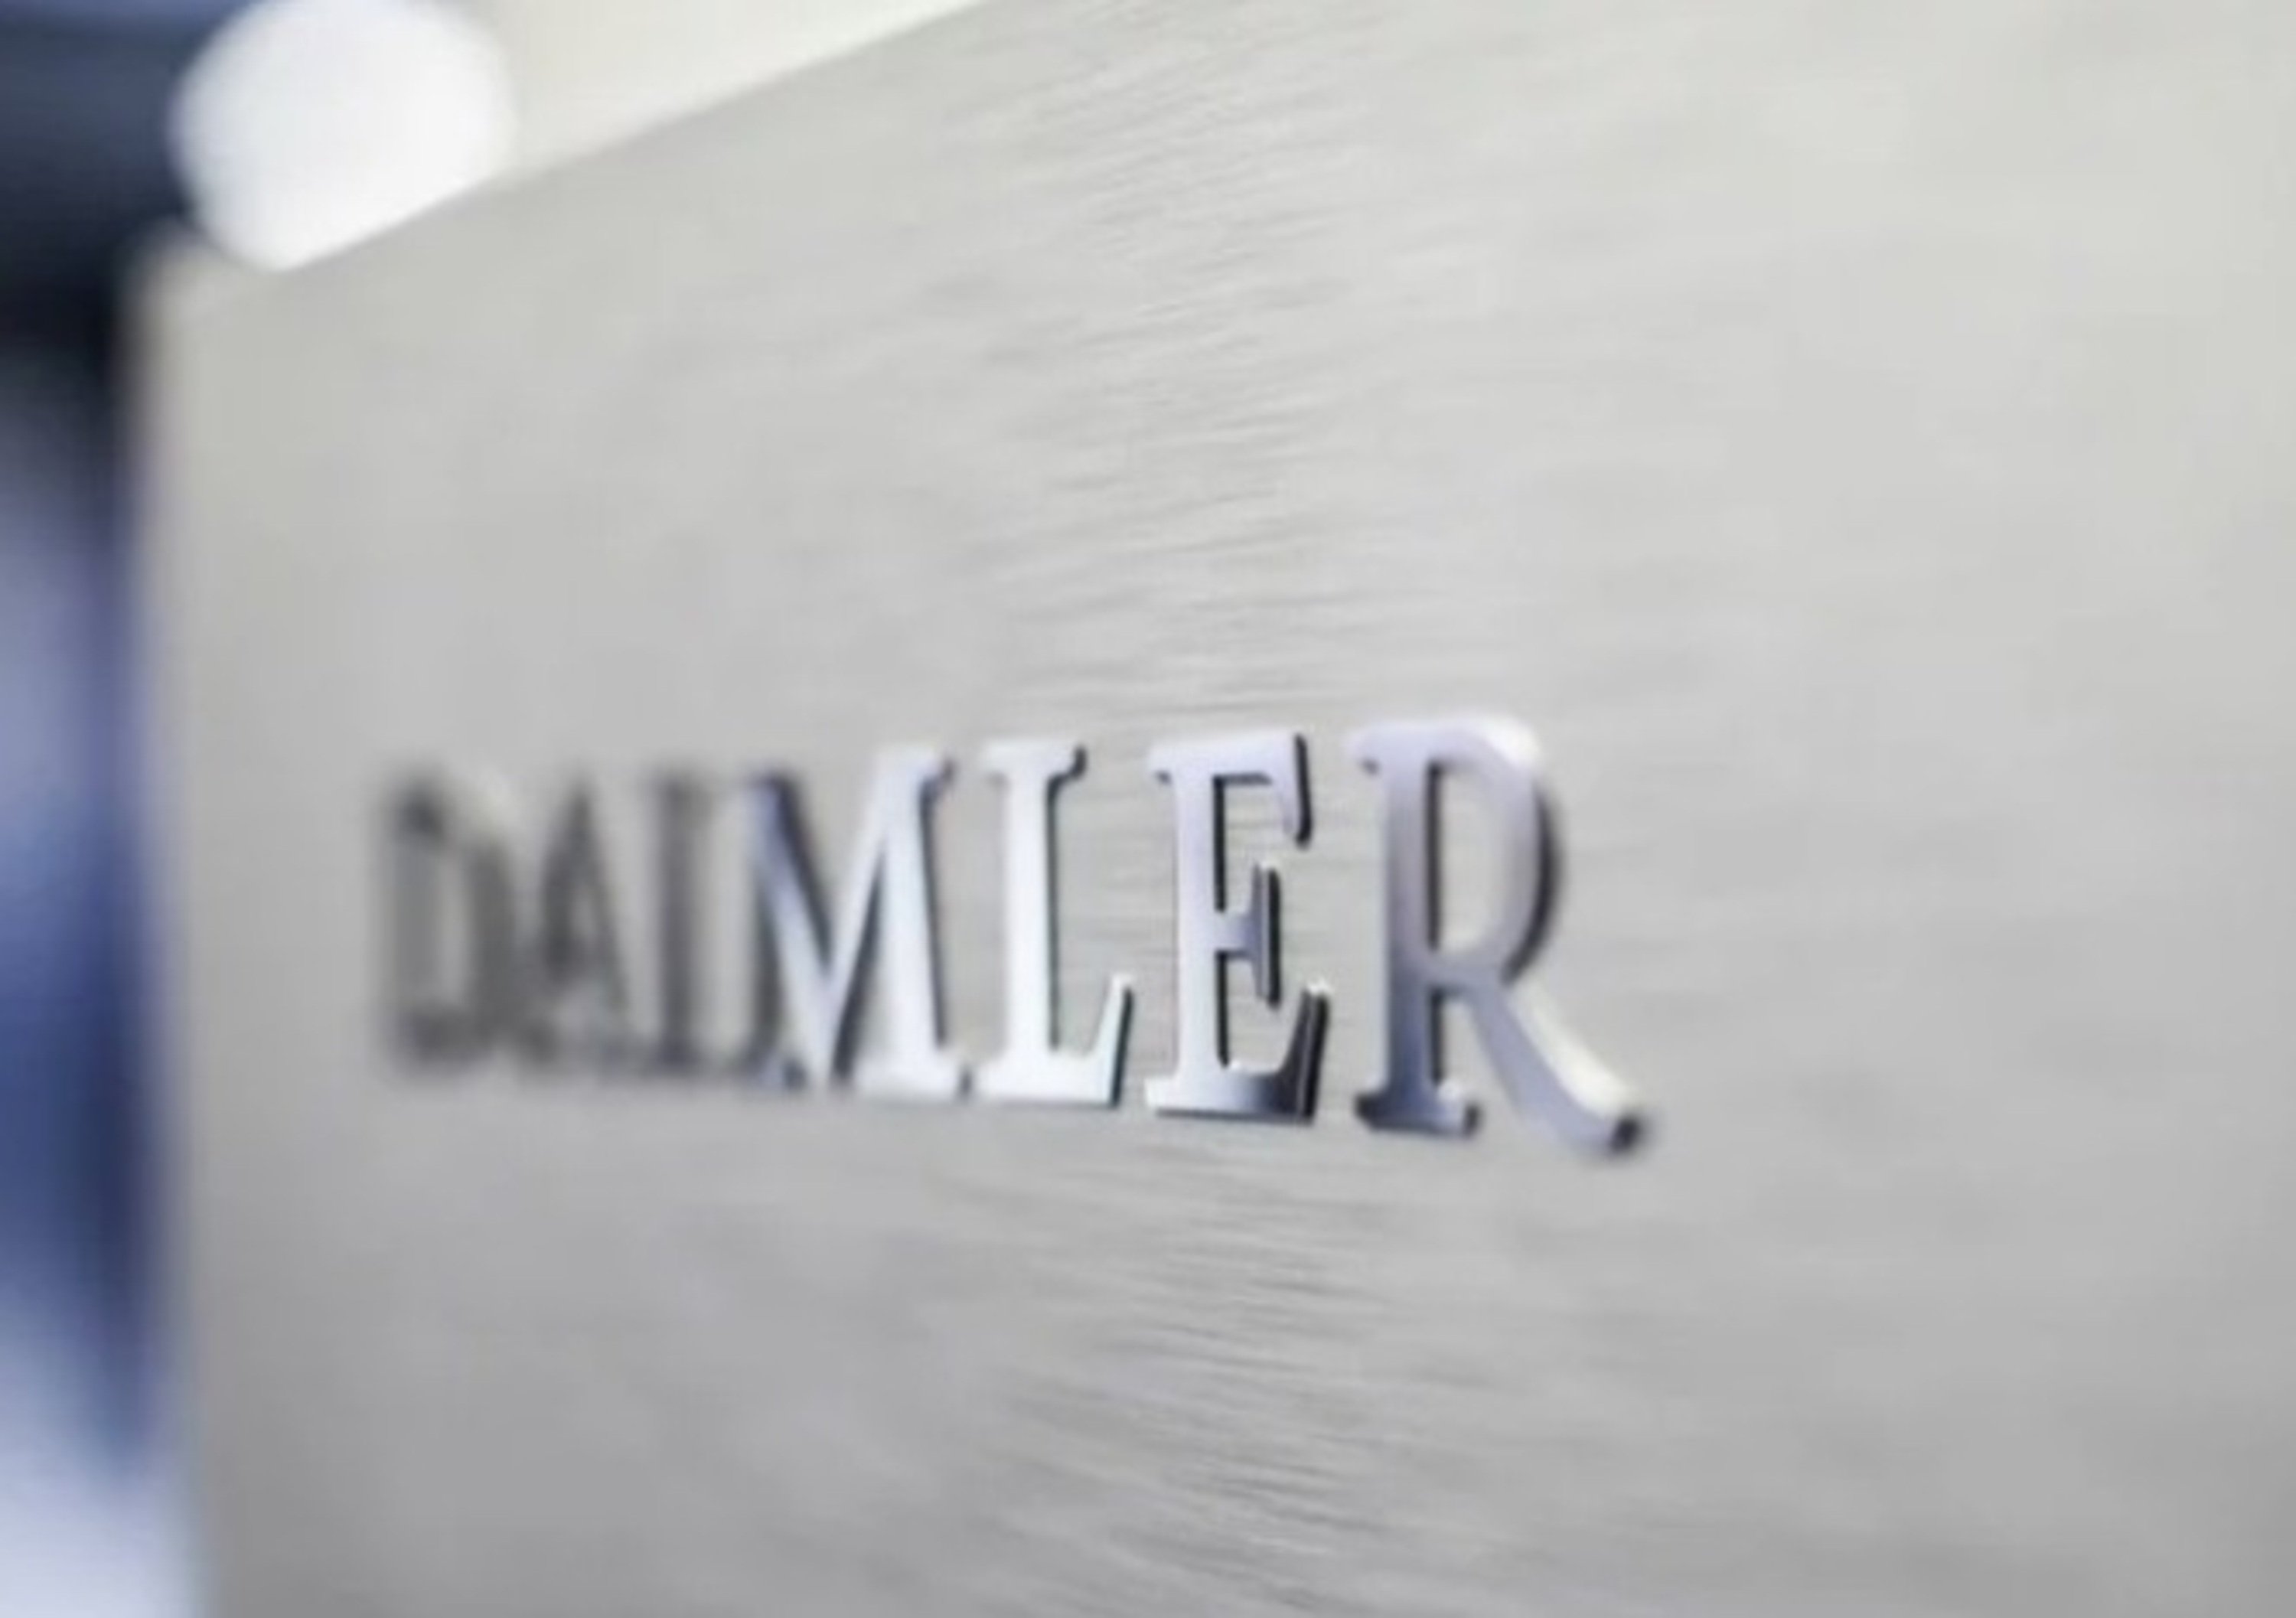 Daimler, tagli del personale di Mercedes per 1,1 miliardi di euro entro il 2022